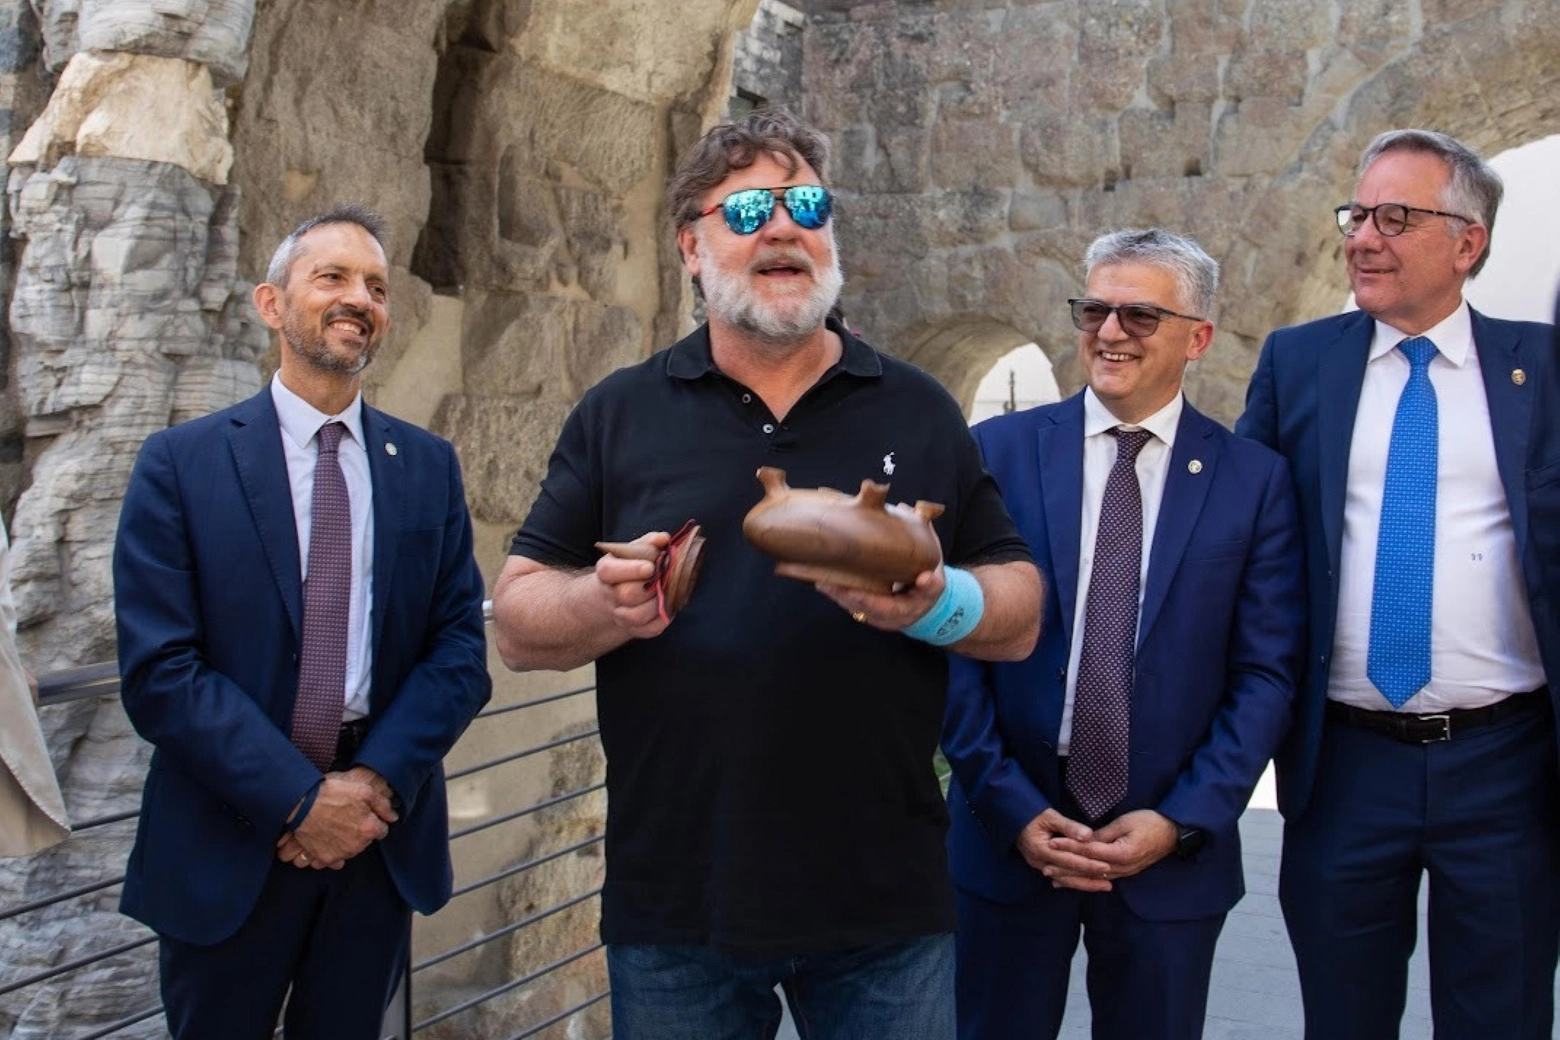 Russell Crowe in visita ad Aosta, con in mano la tradizionale grolla